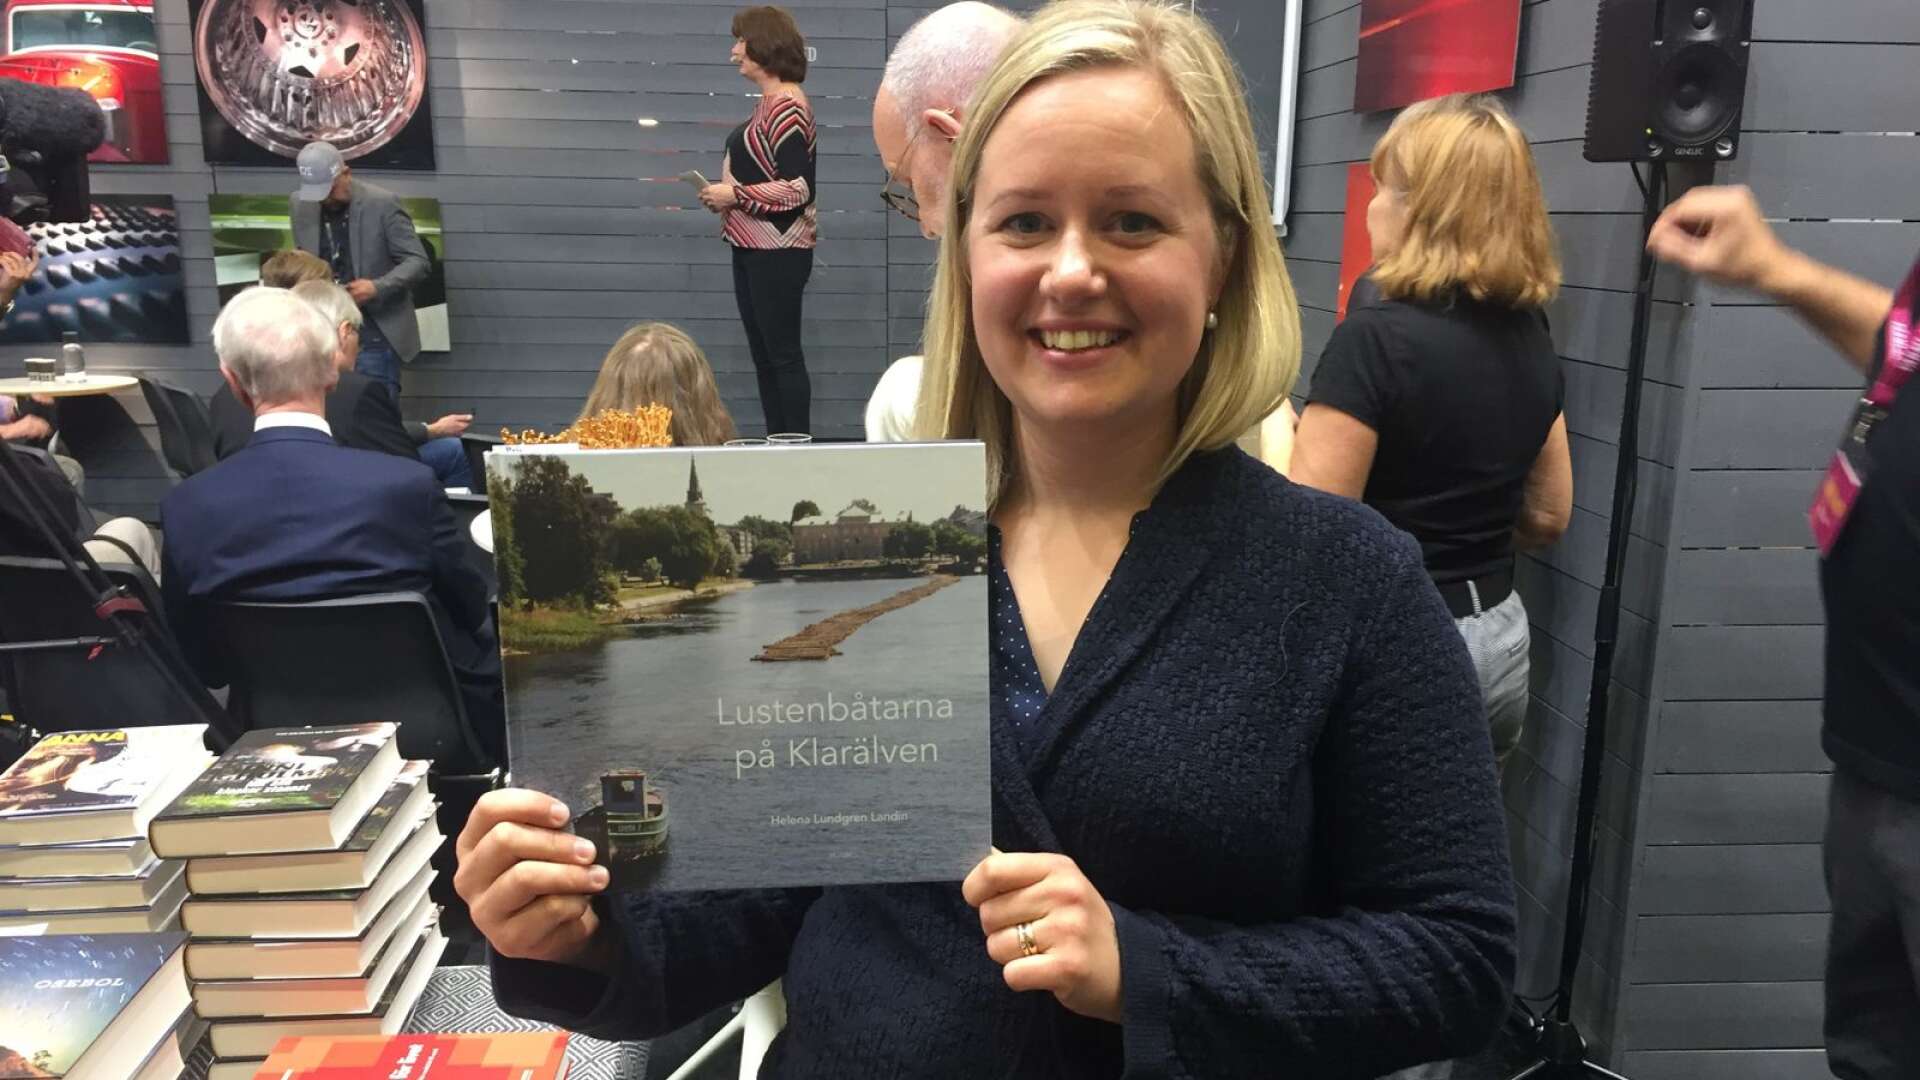 Helena Lundgren Landin belönas för boken ”Lustenbåtarna på Klarälven”.